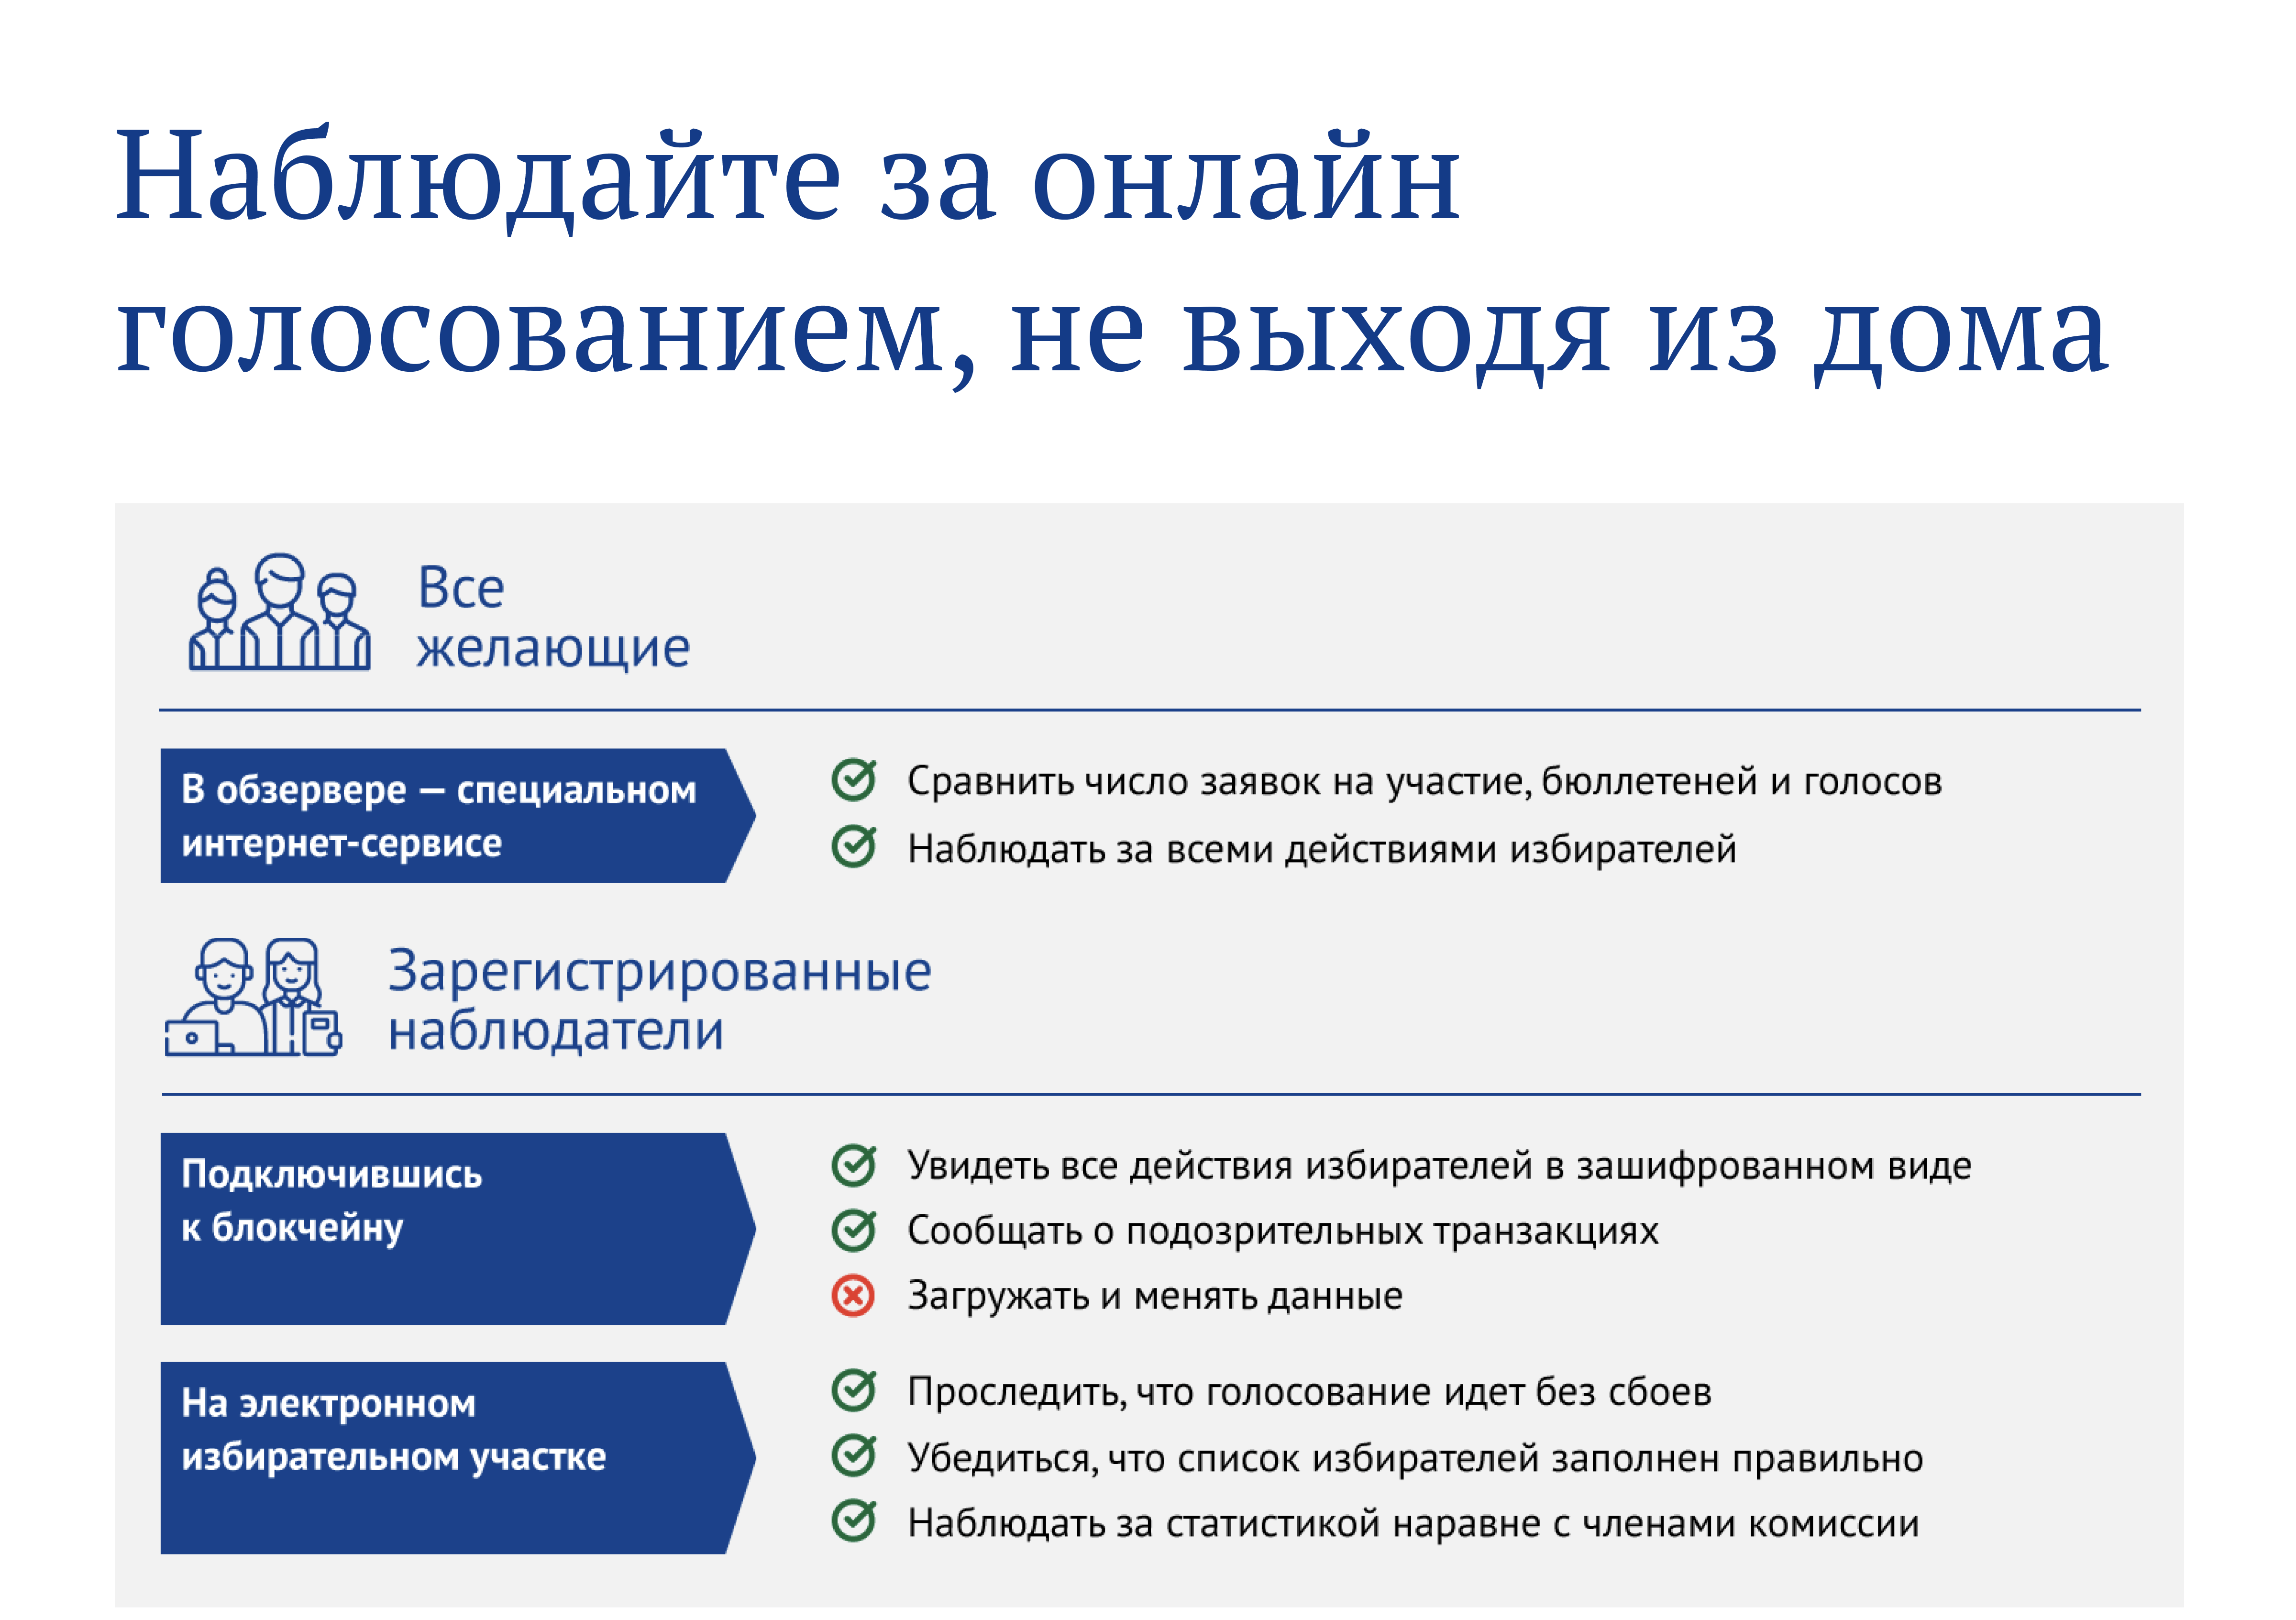 Номера избирательных участков. Как можно электронно проголосовать. Номера избирательных участков в Москве. До какого числа можно голосовать электронно.